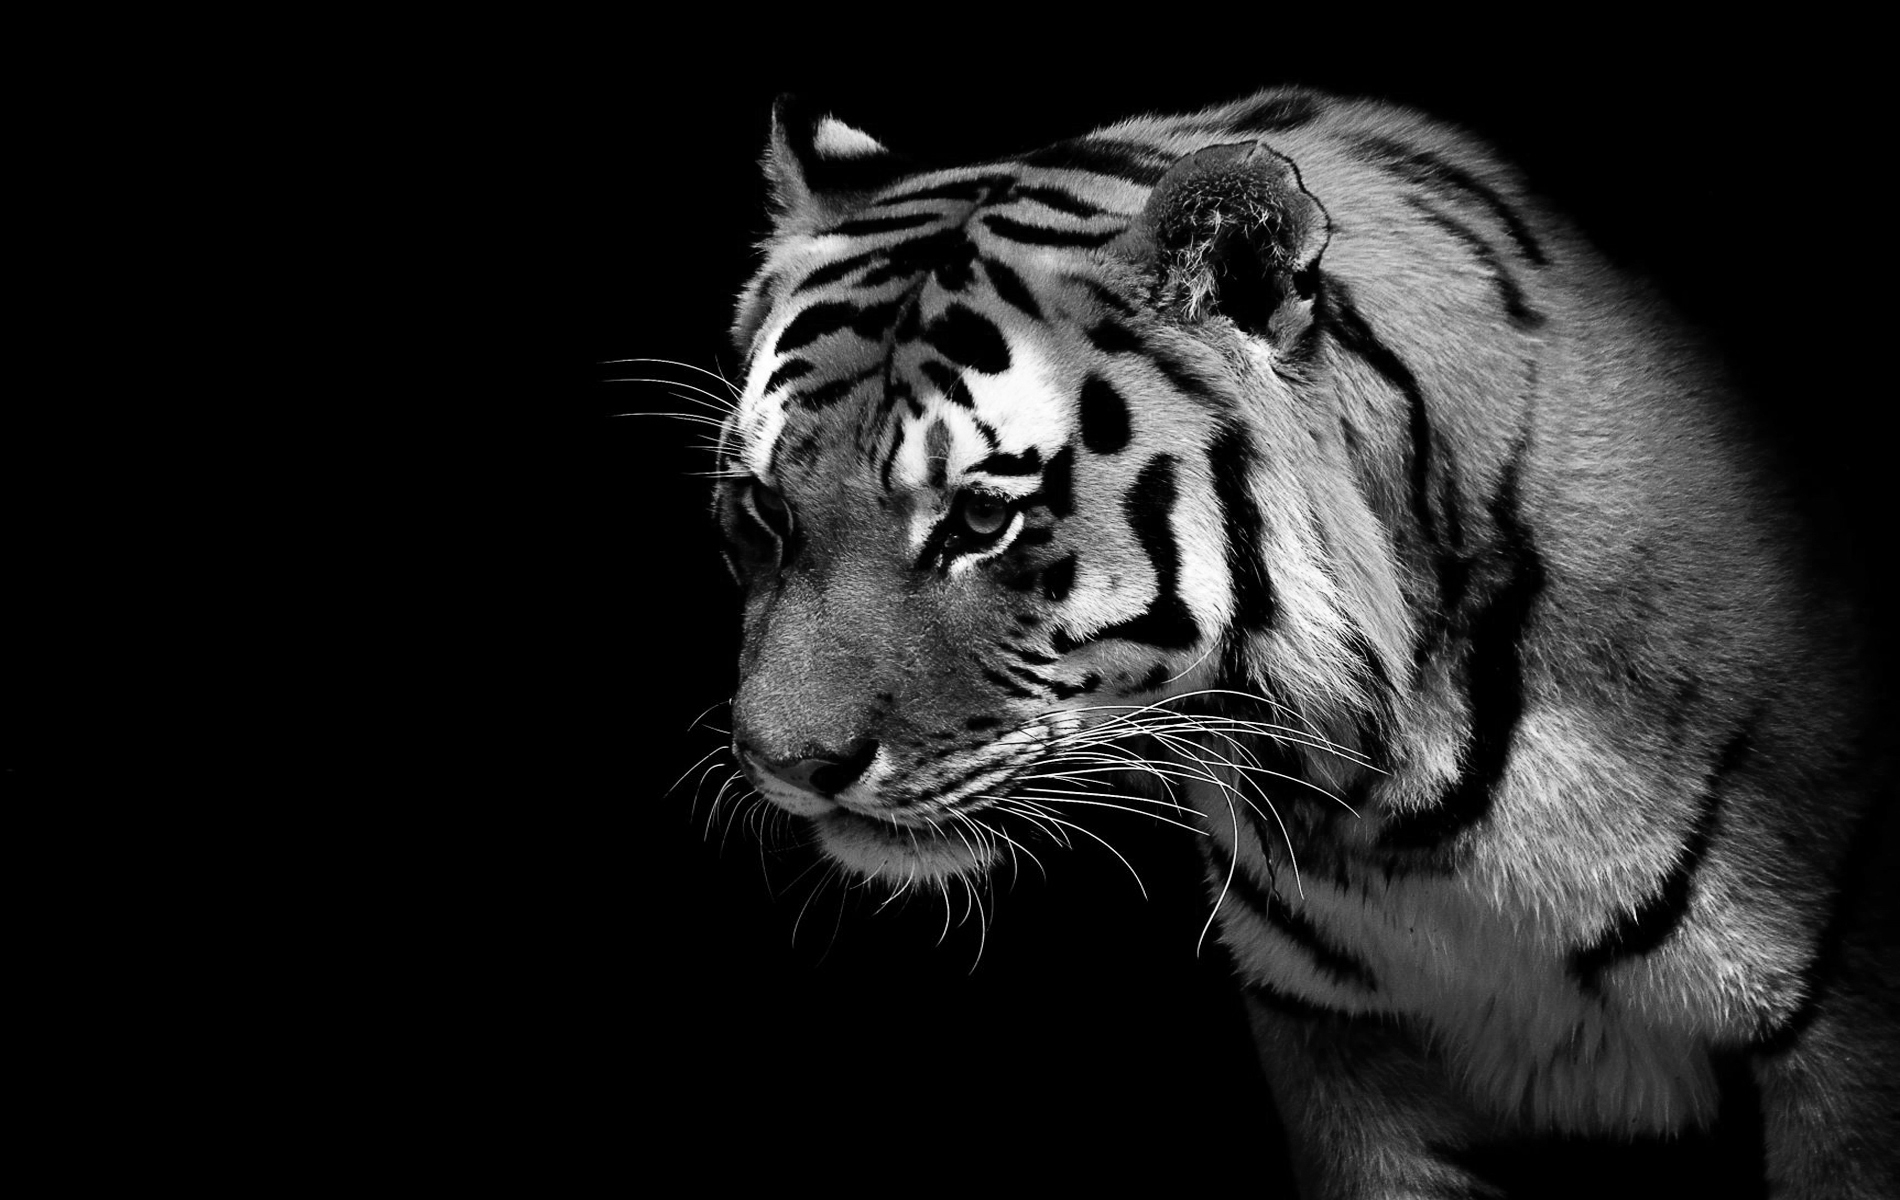 white tiger hd wallpapers 1080p,vertebrate,wildlife,bengal tiger,tiger,mammal